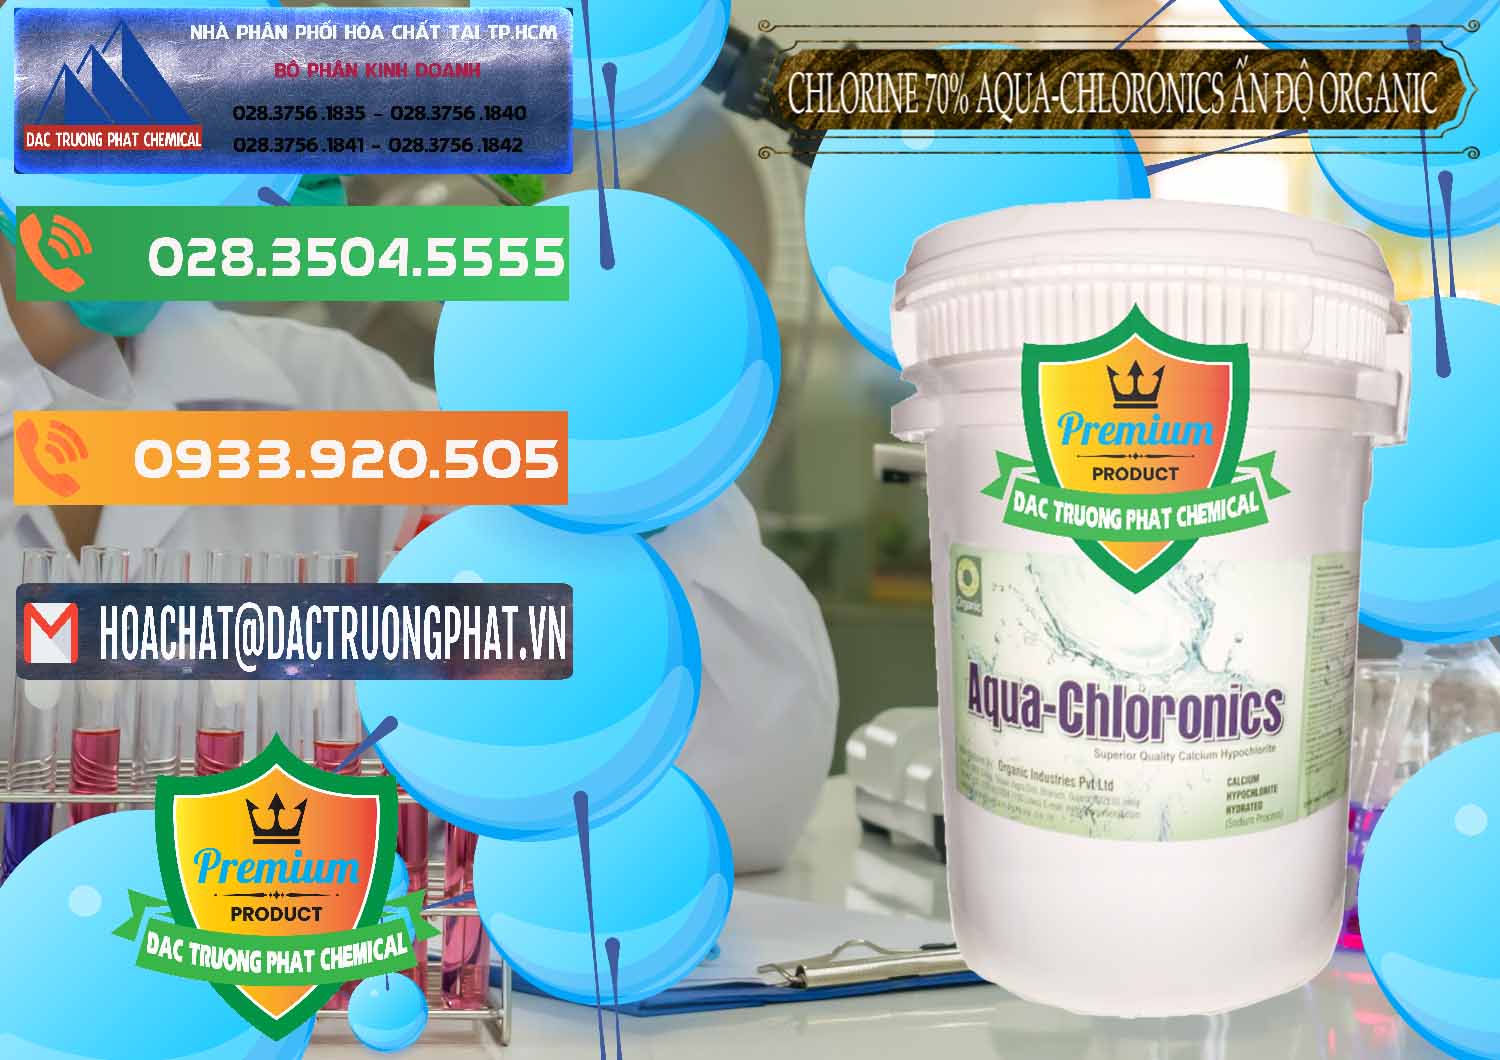 Cty chuyên kinh doanh ( bán ) Chlorine – Clorin 70% Aqua-Chloronics Ấn Độ Organic India - 0211 - Công ty chuyên bán & phân phối hóa chất tại TP.HCM - hoachatxulynuoc.com.vn